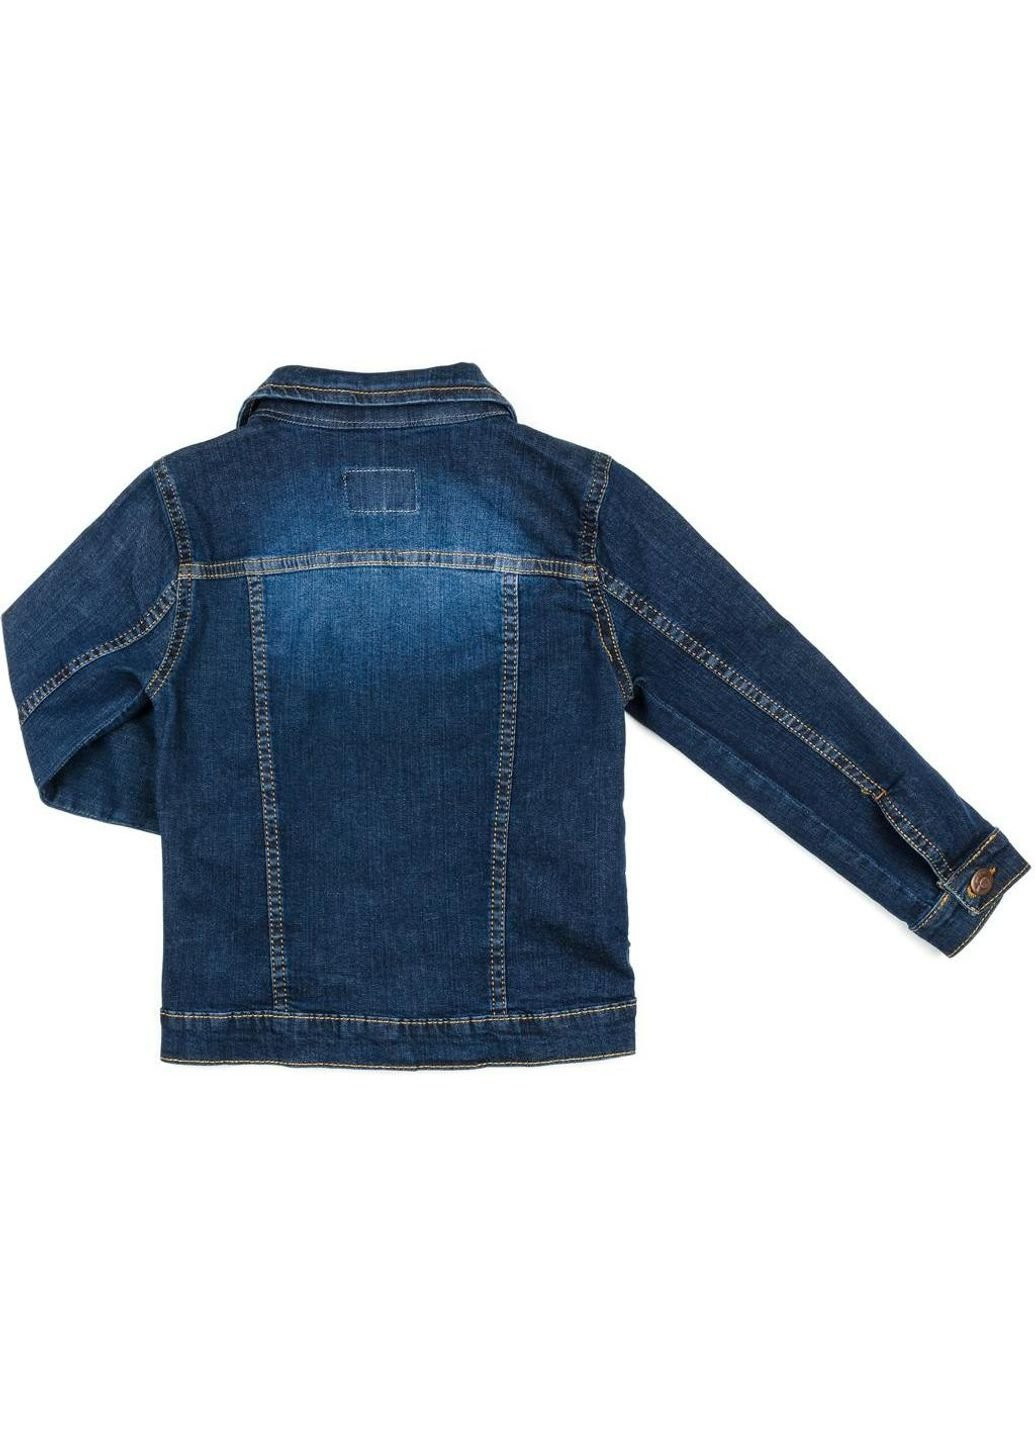 Синяя демисезонная куртка джинсовая (20057-152b-blue) Breeze